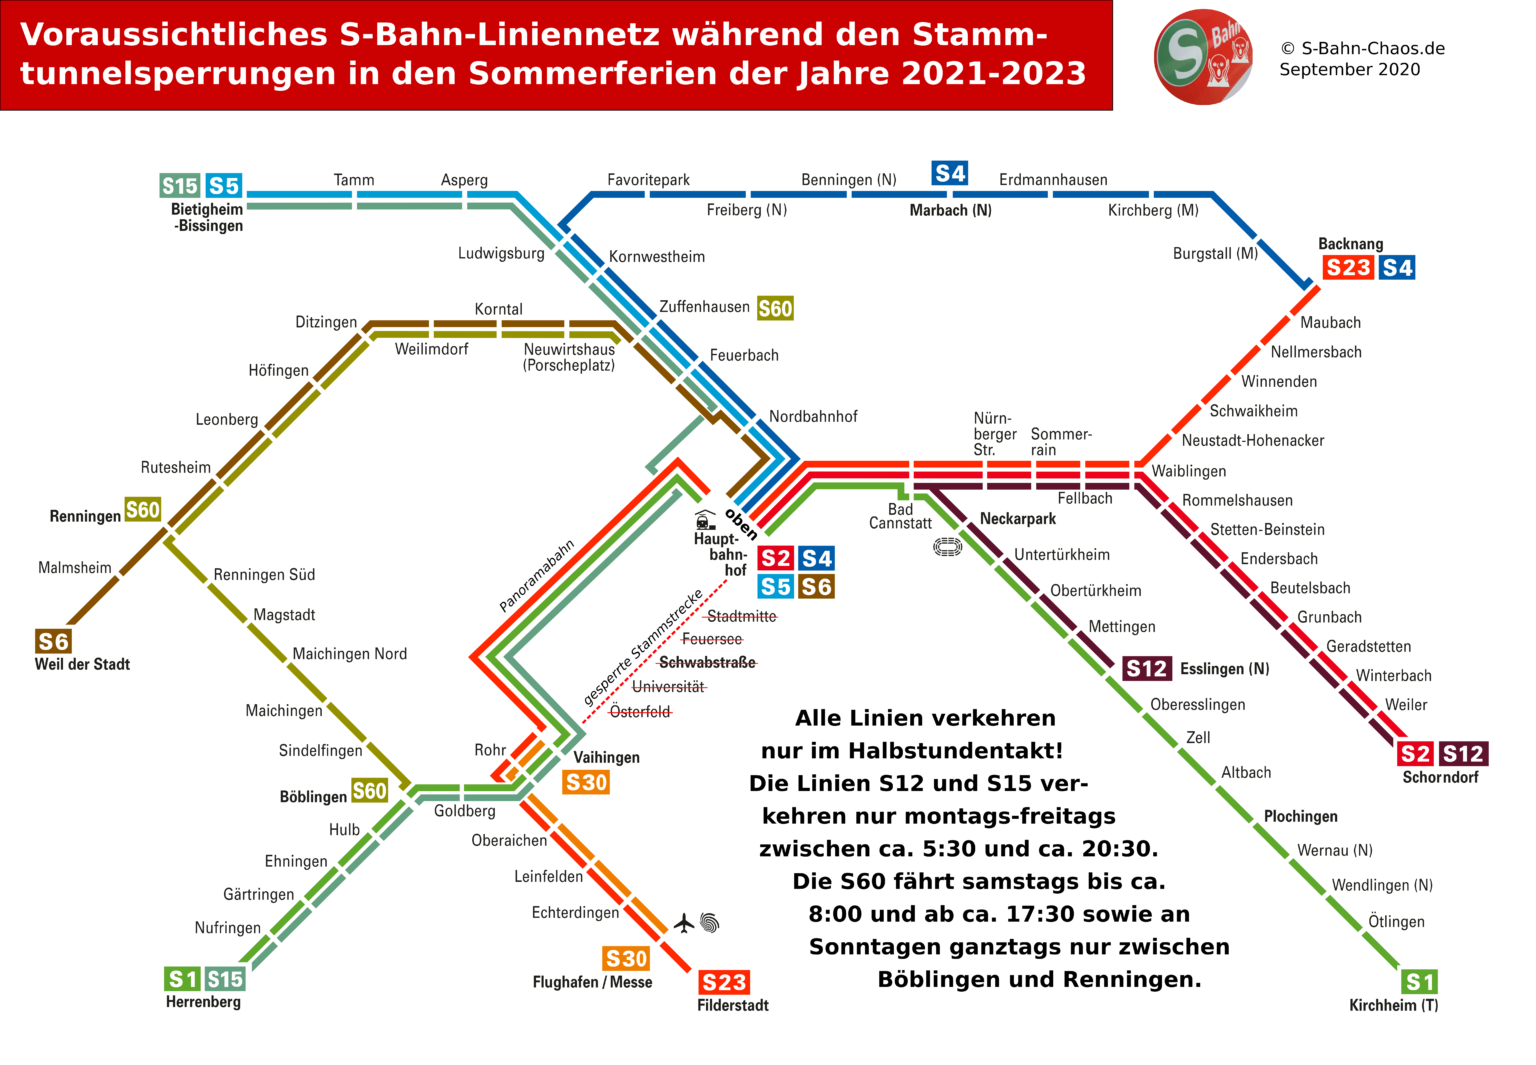 Fahrplanänderungen der S-Bahn Stuttgart während den Sommerferien wegen